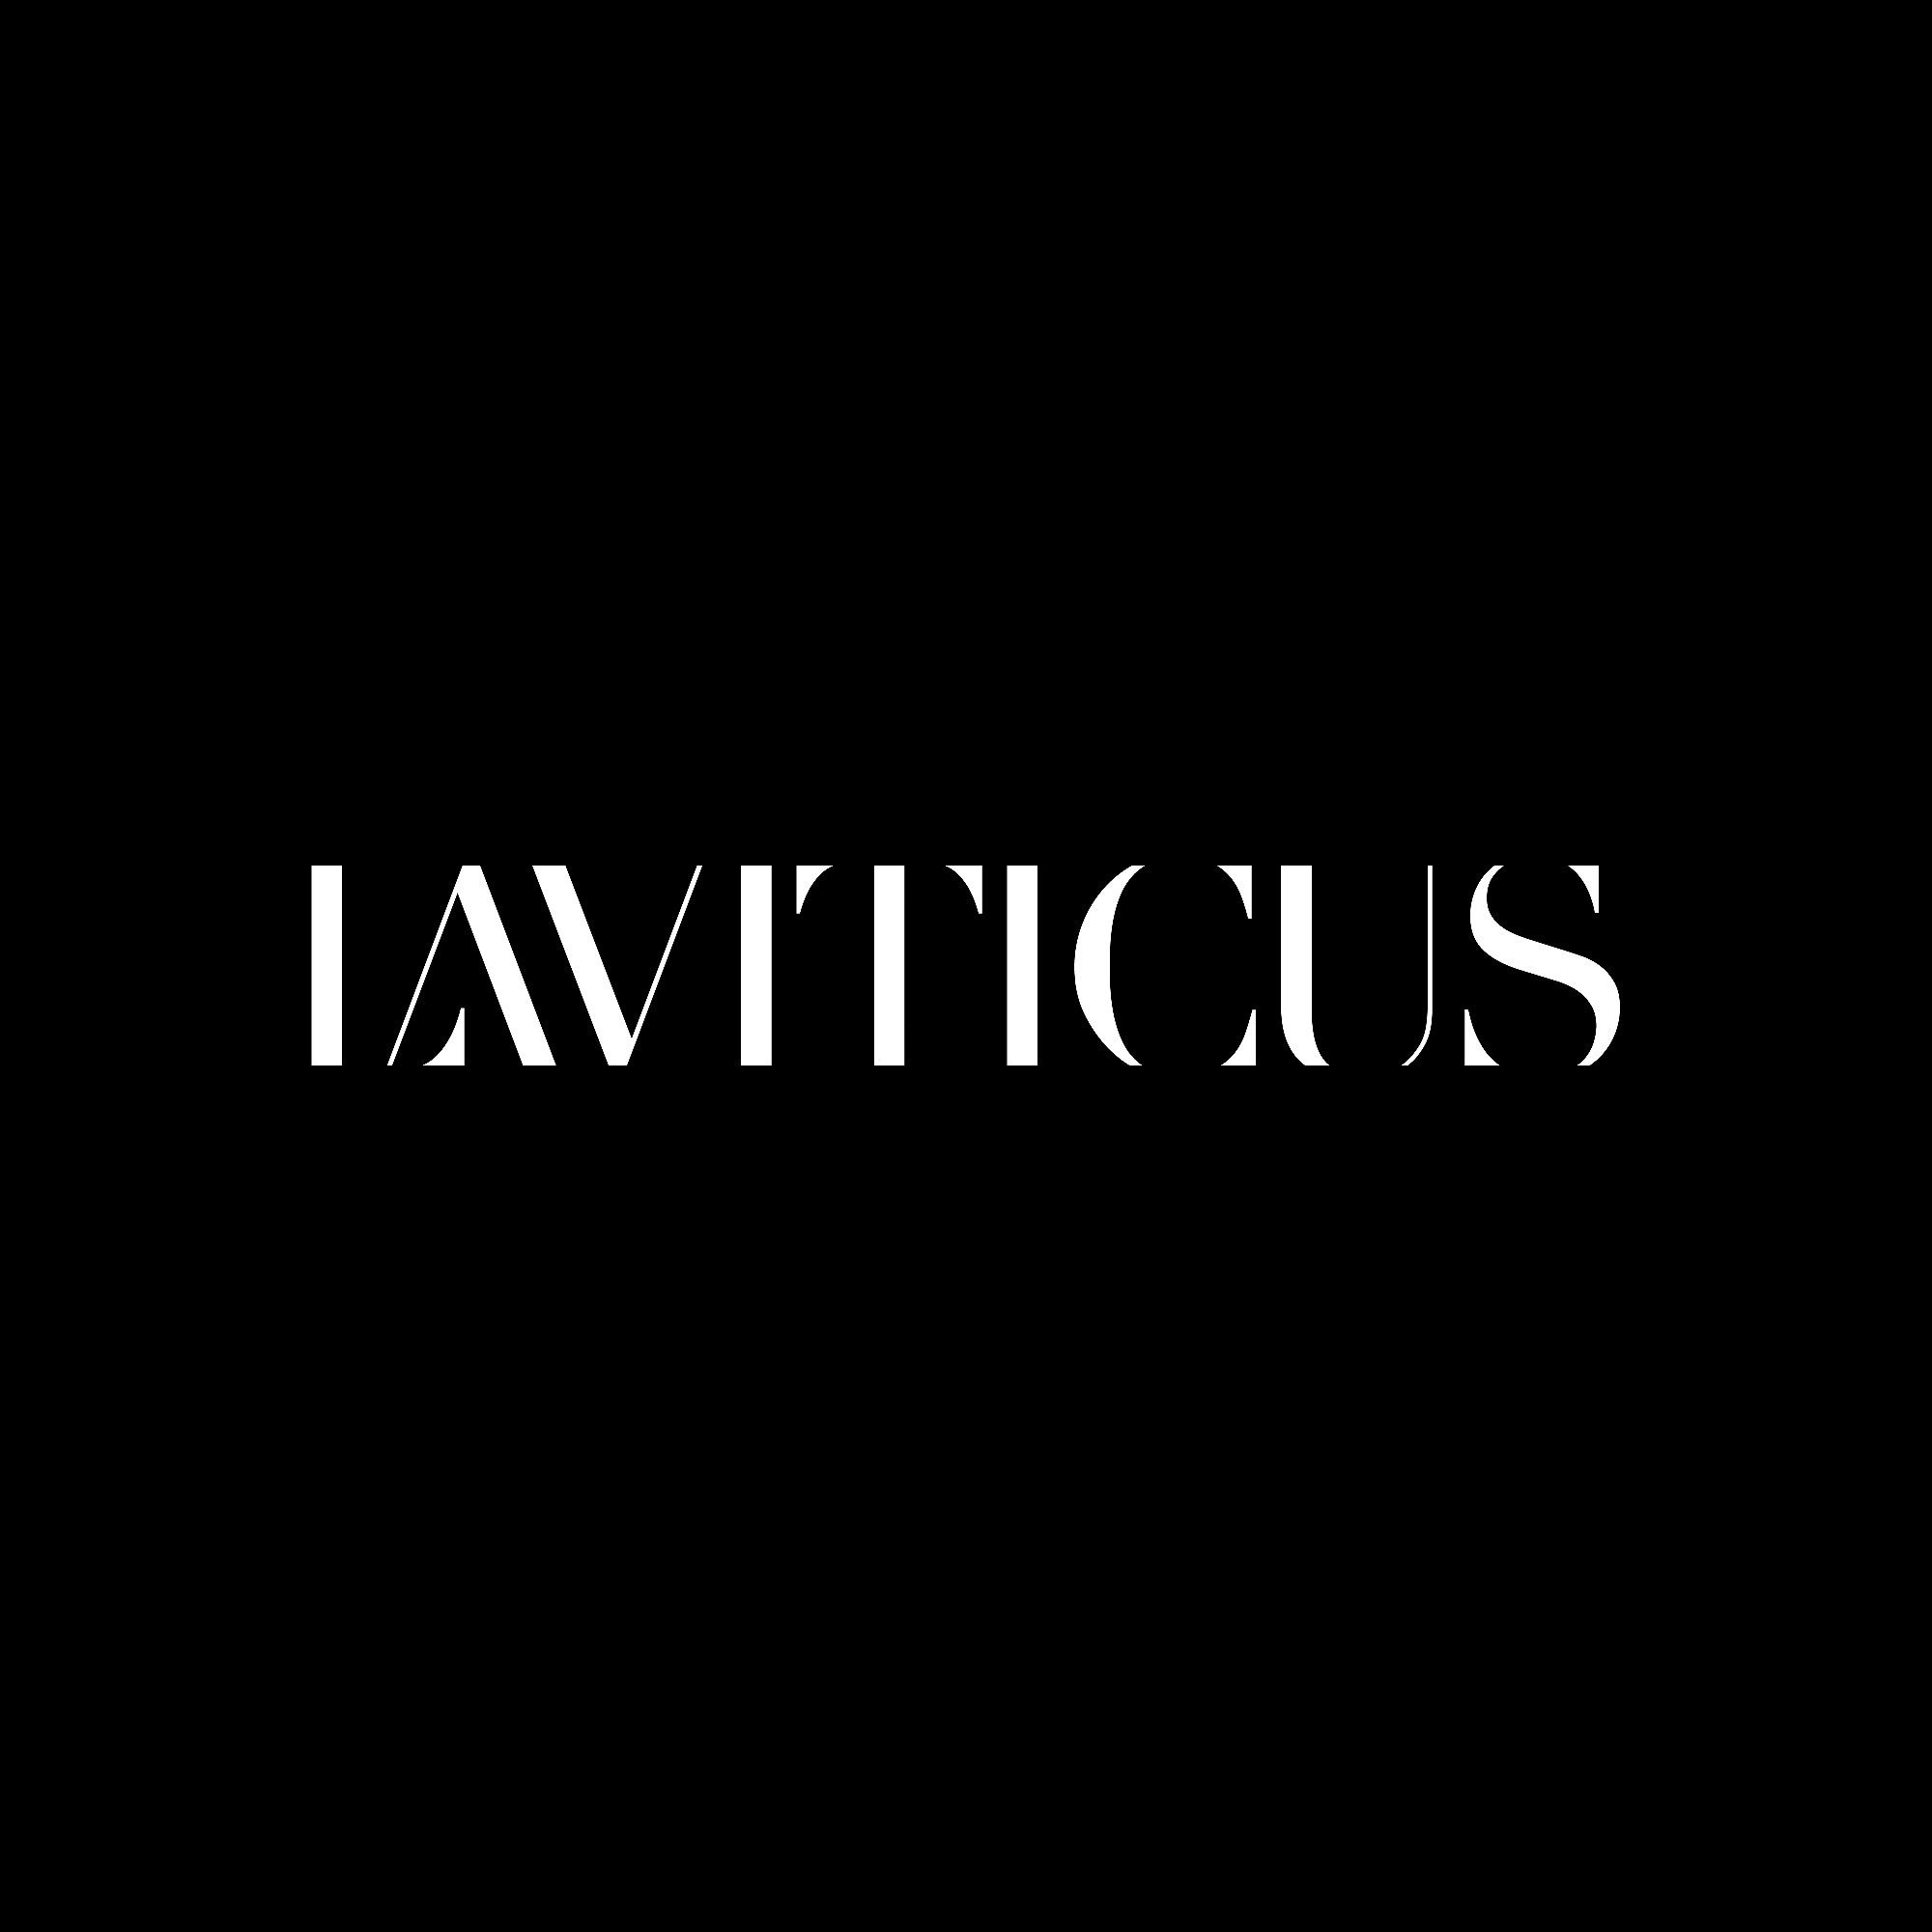 Laviticus Black Logo